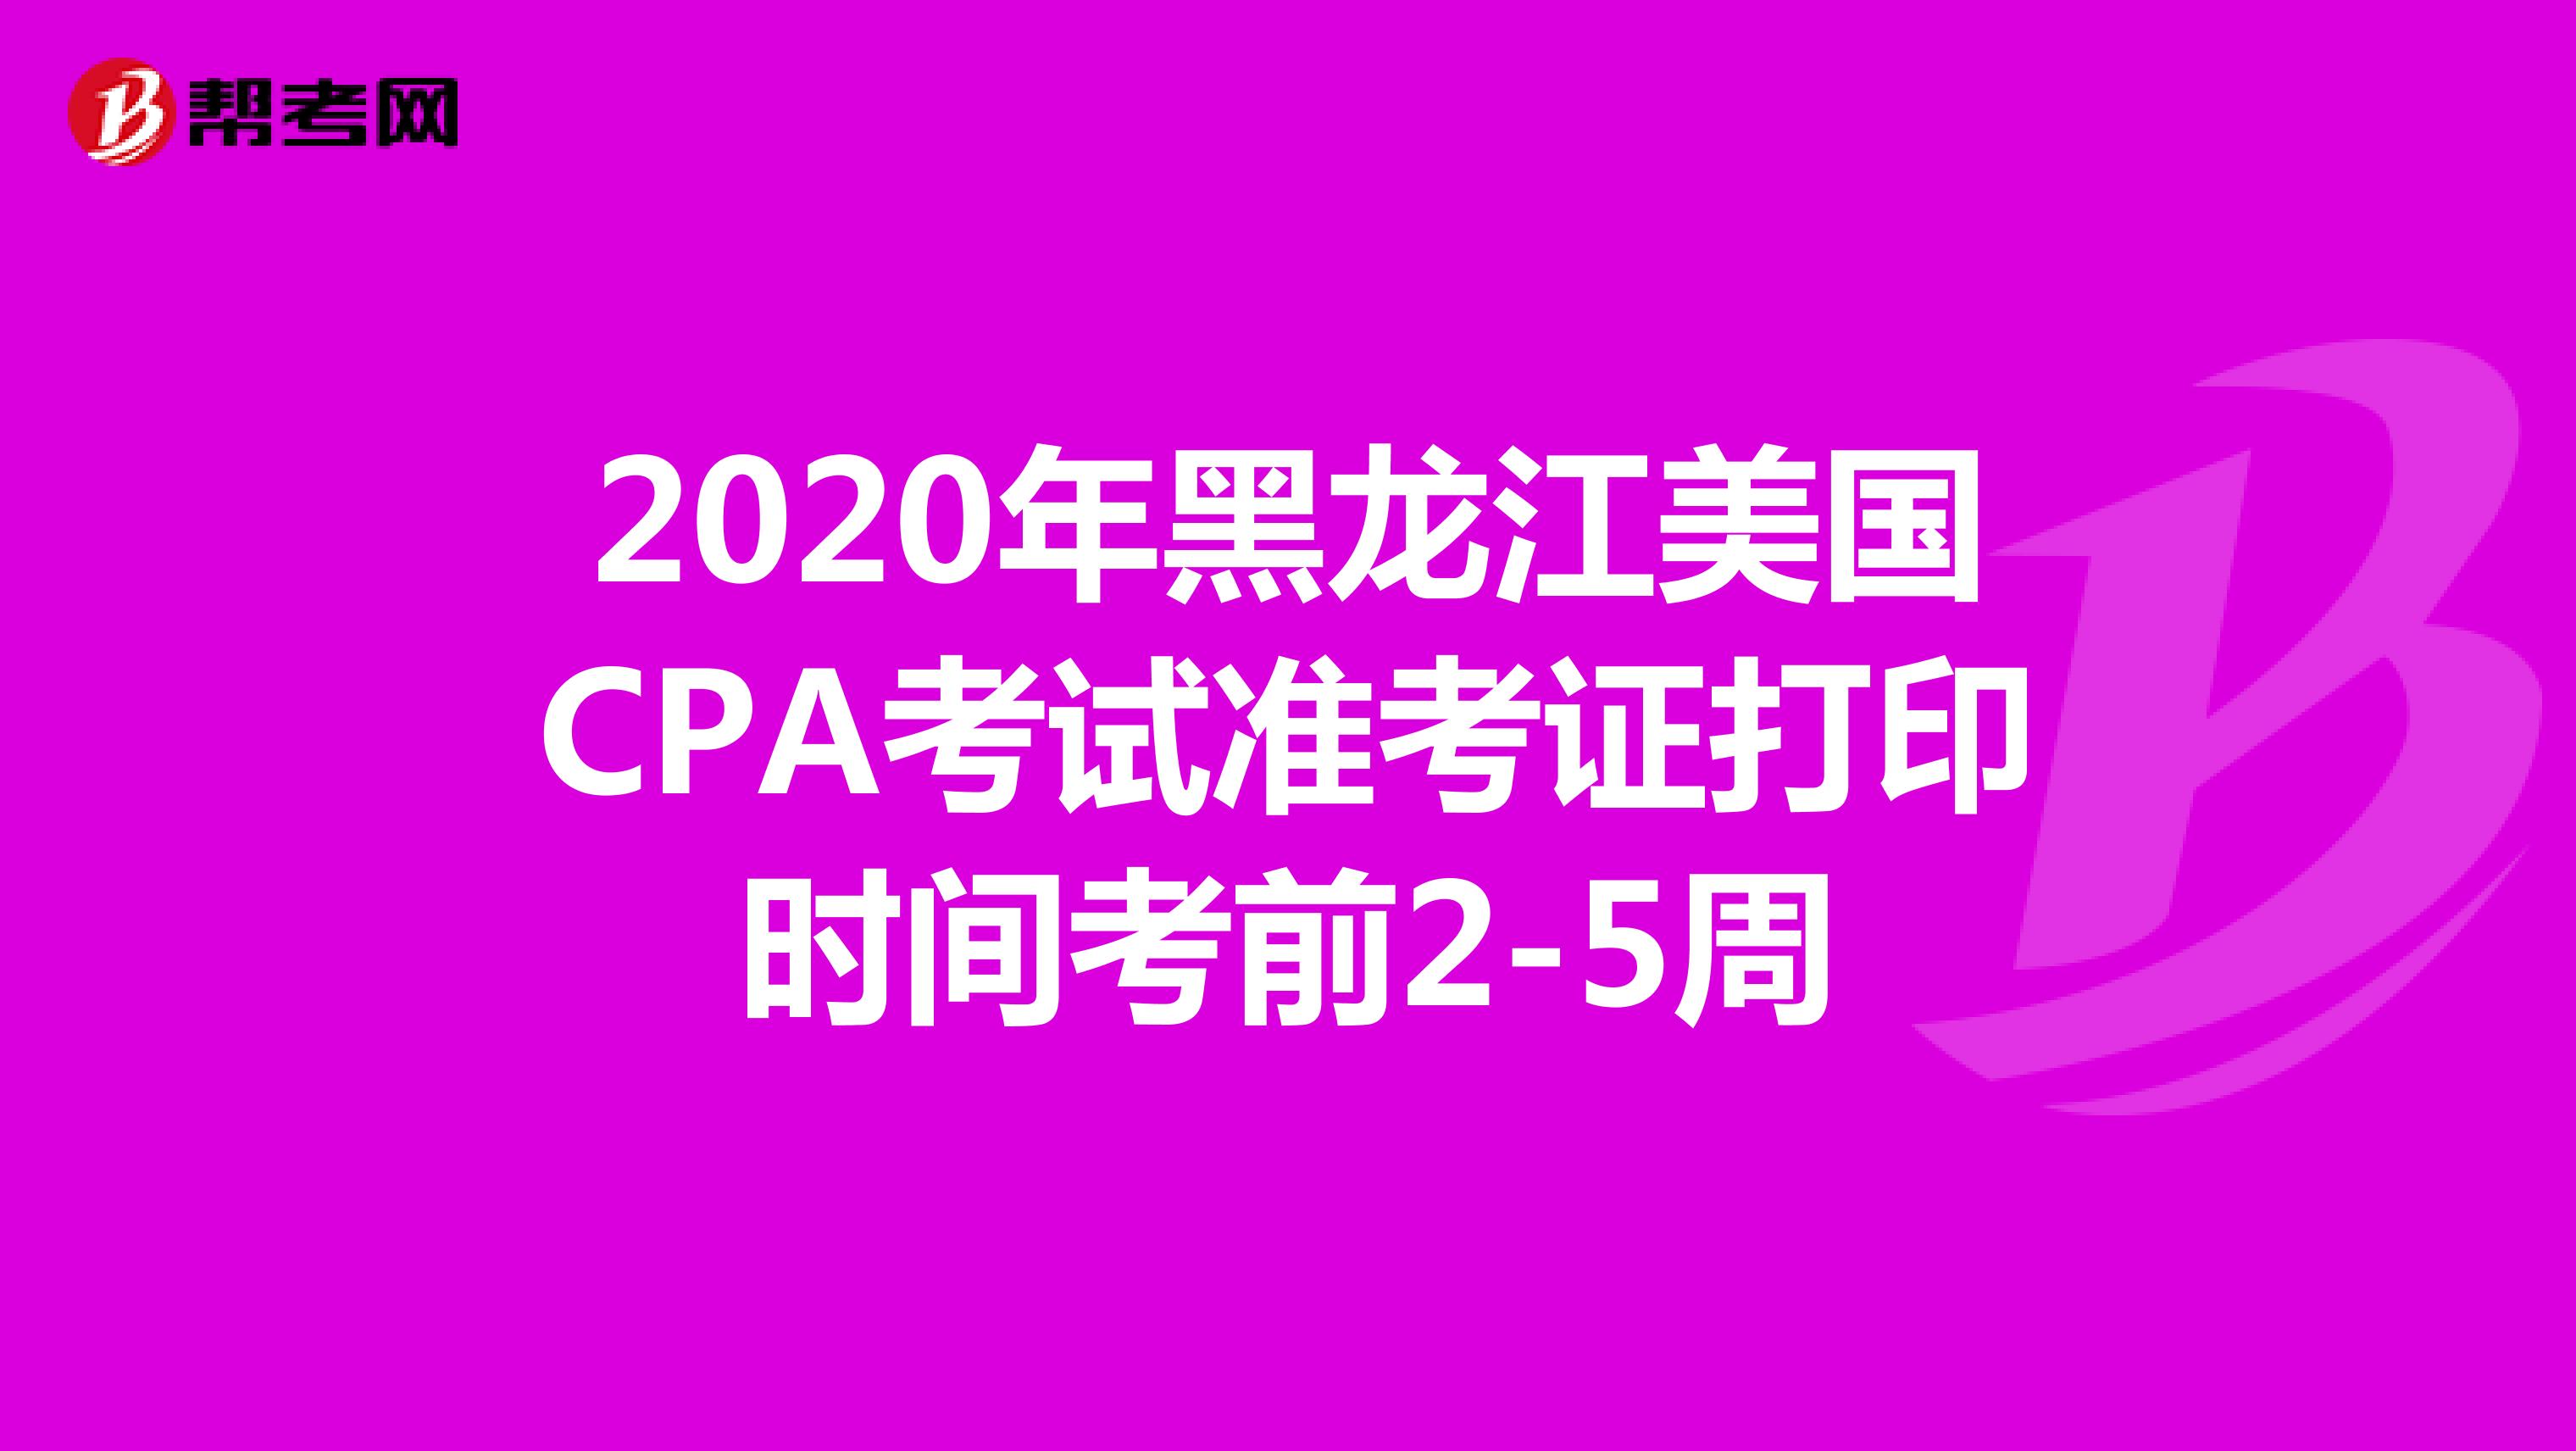 2020年黑龙江美国CPA考试准考证打印时间考前2-5周